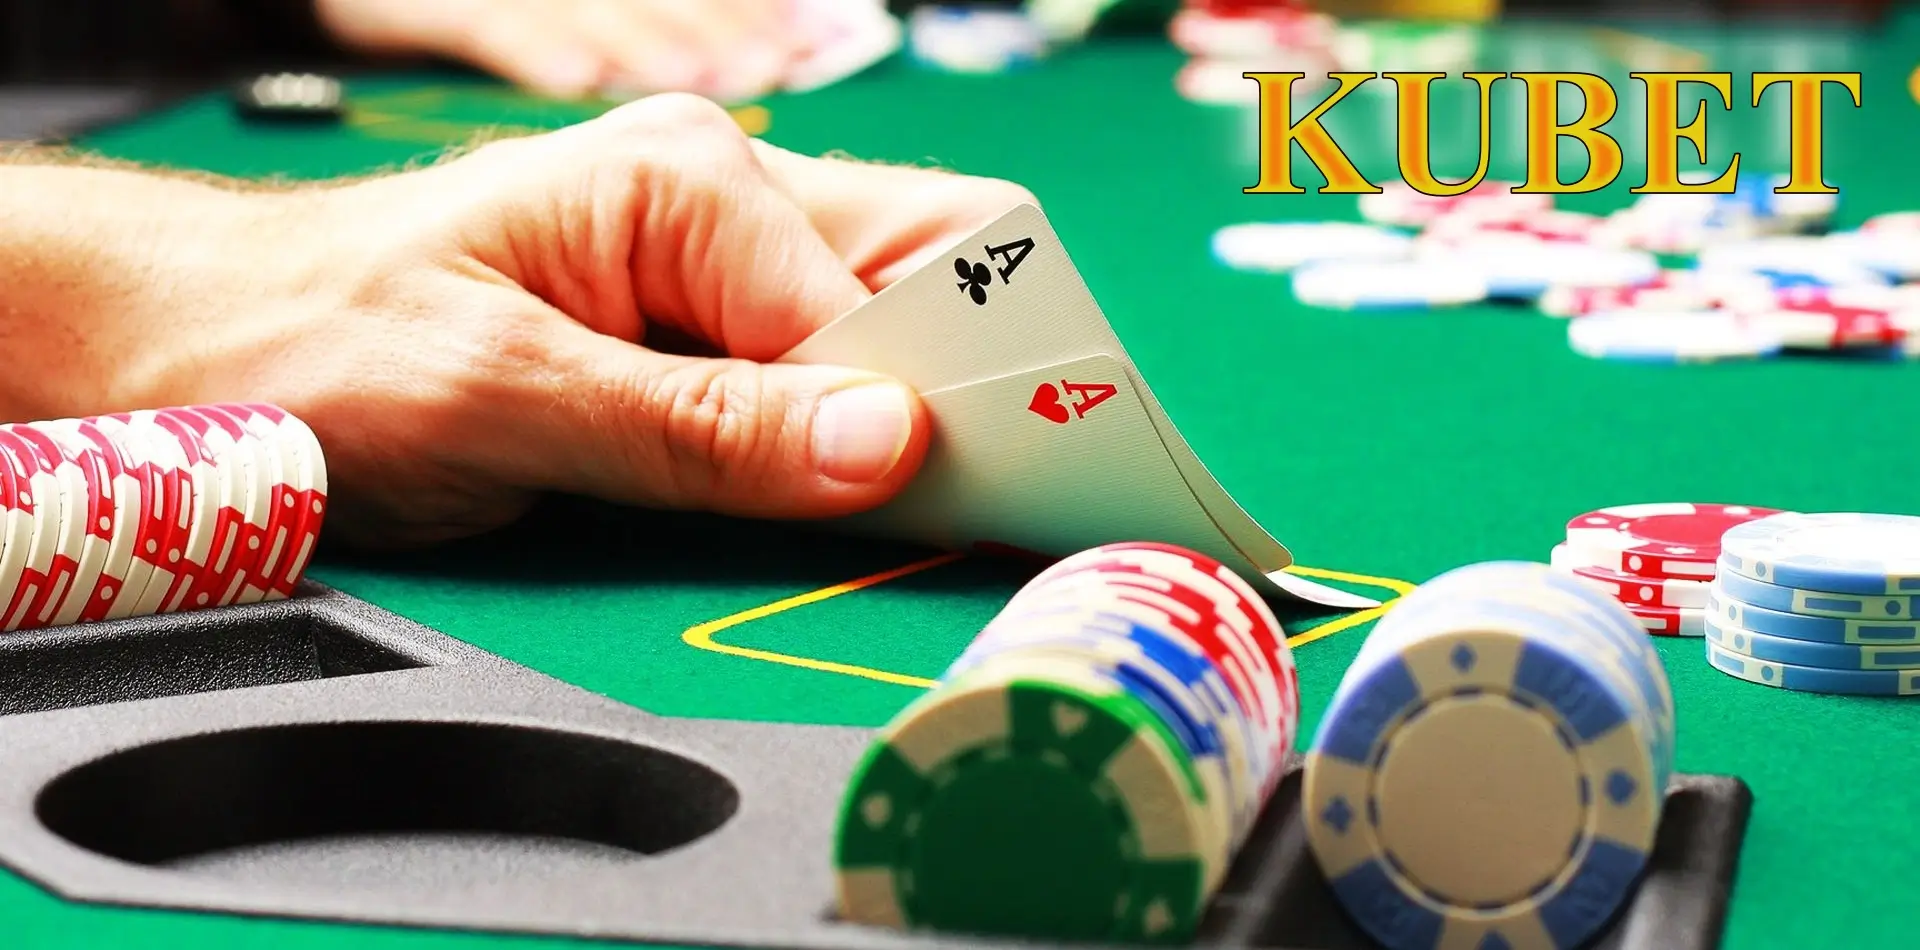 Mẹo chơi Poker tại Kubet giúp người mới trở thành cao thủ